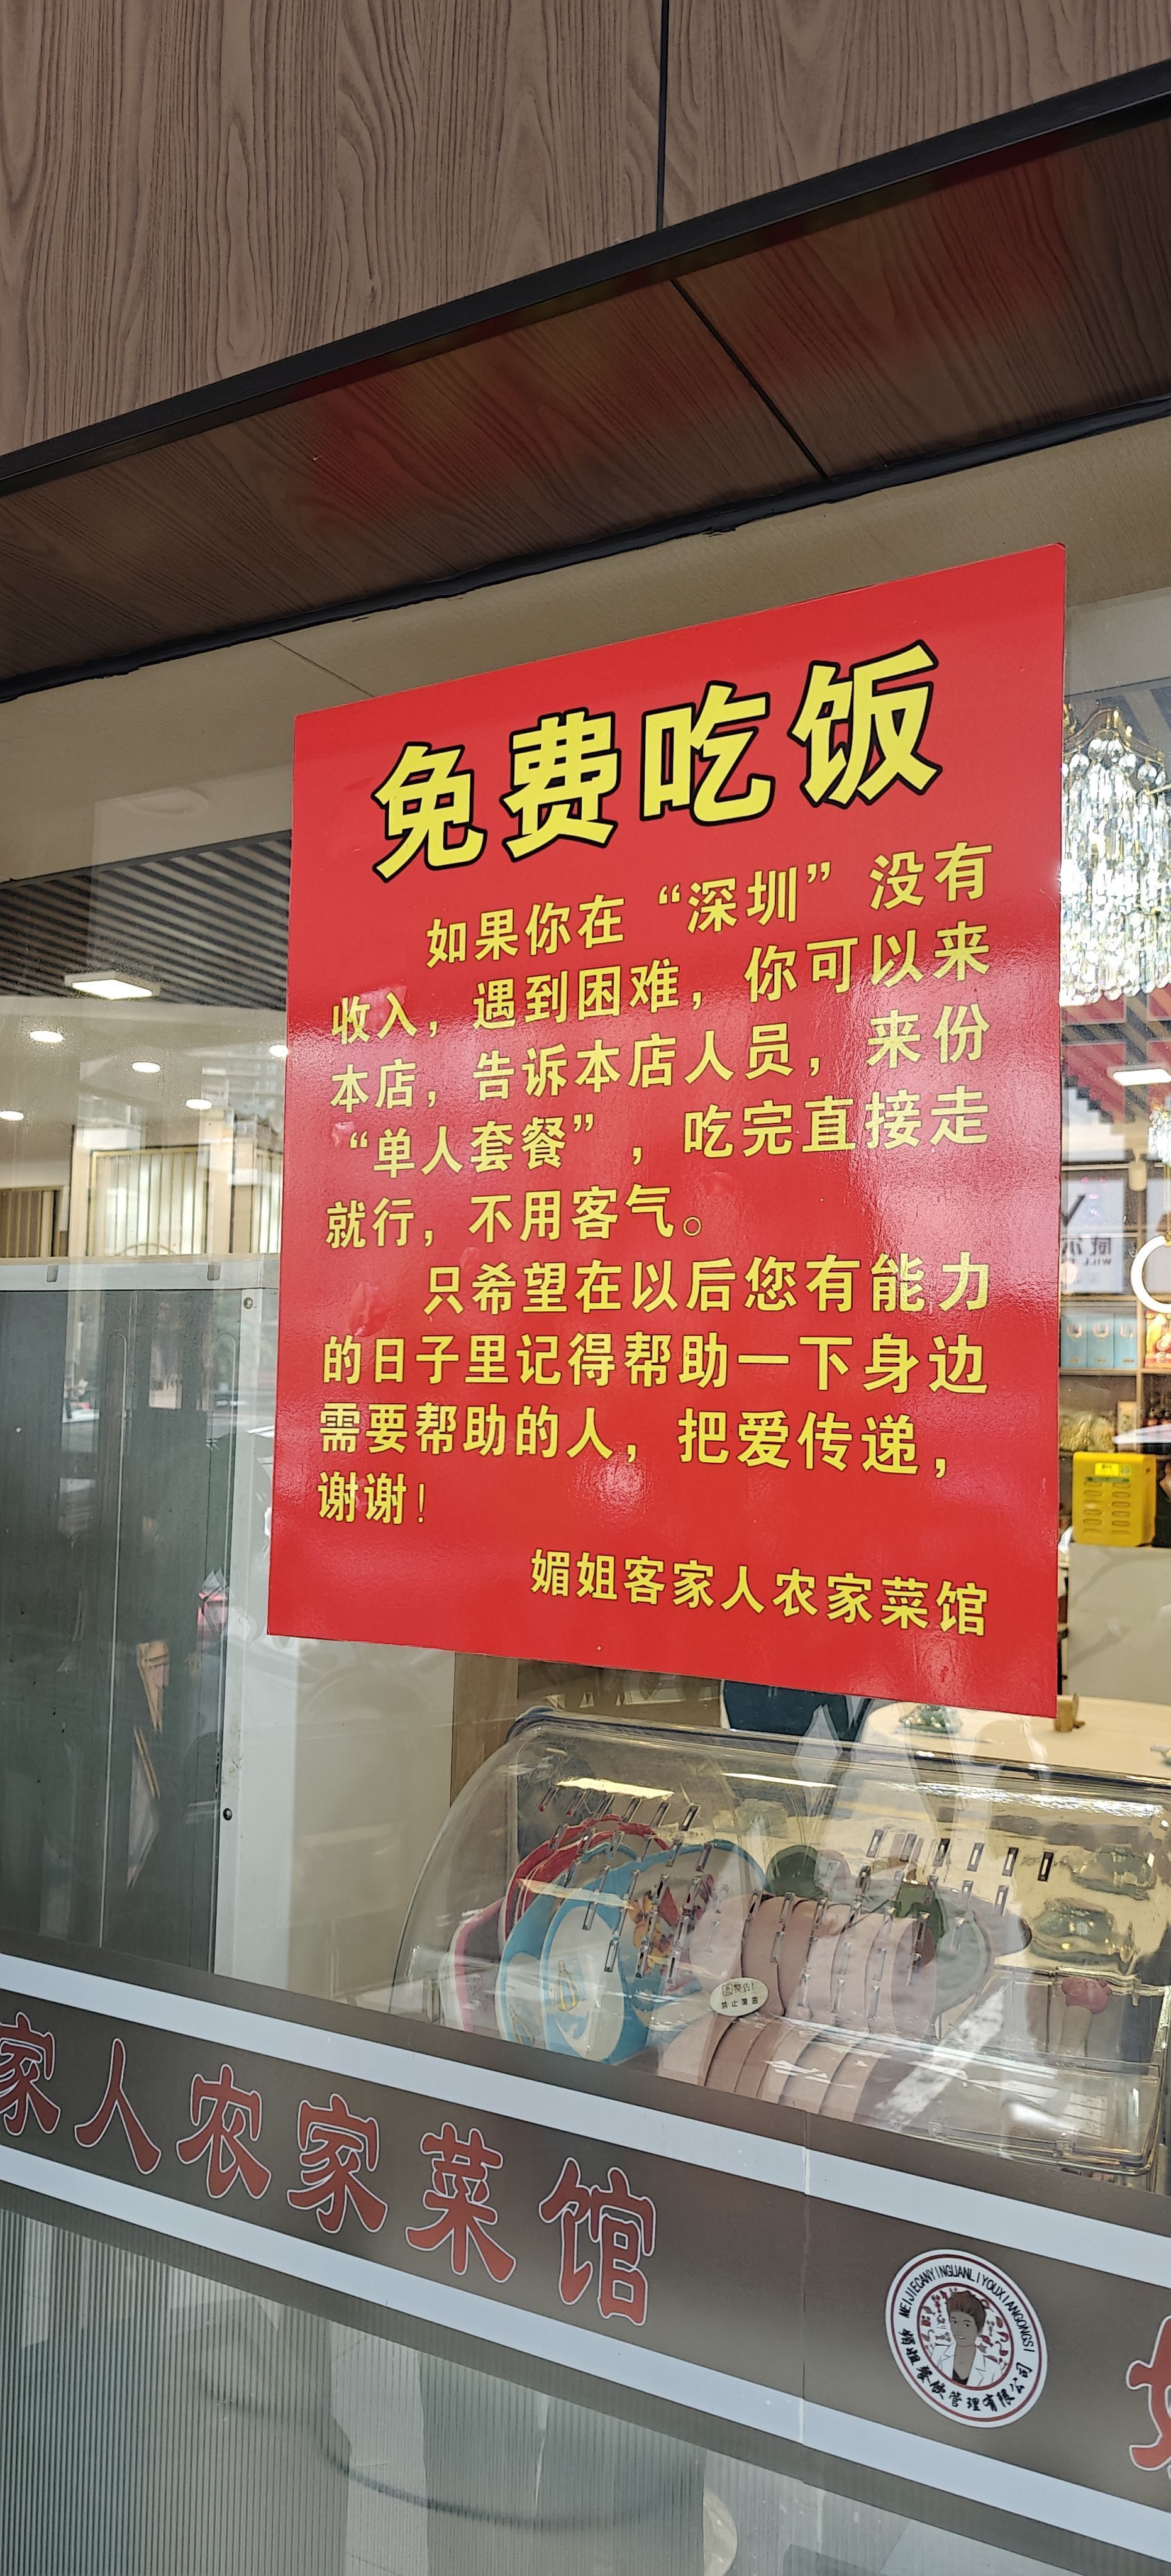 遇到困難可免費吃飯！深圳一餐館老板“免費午餐”送了5年2